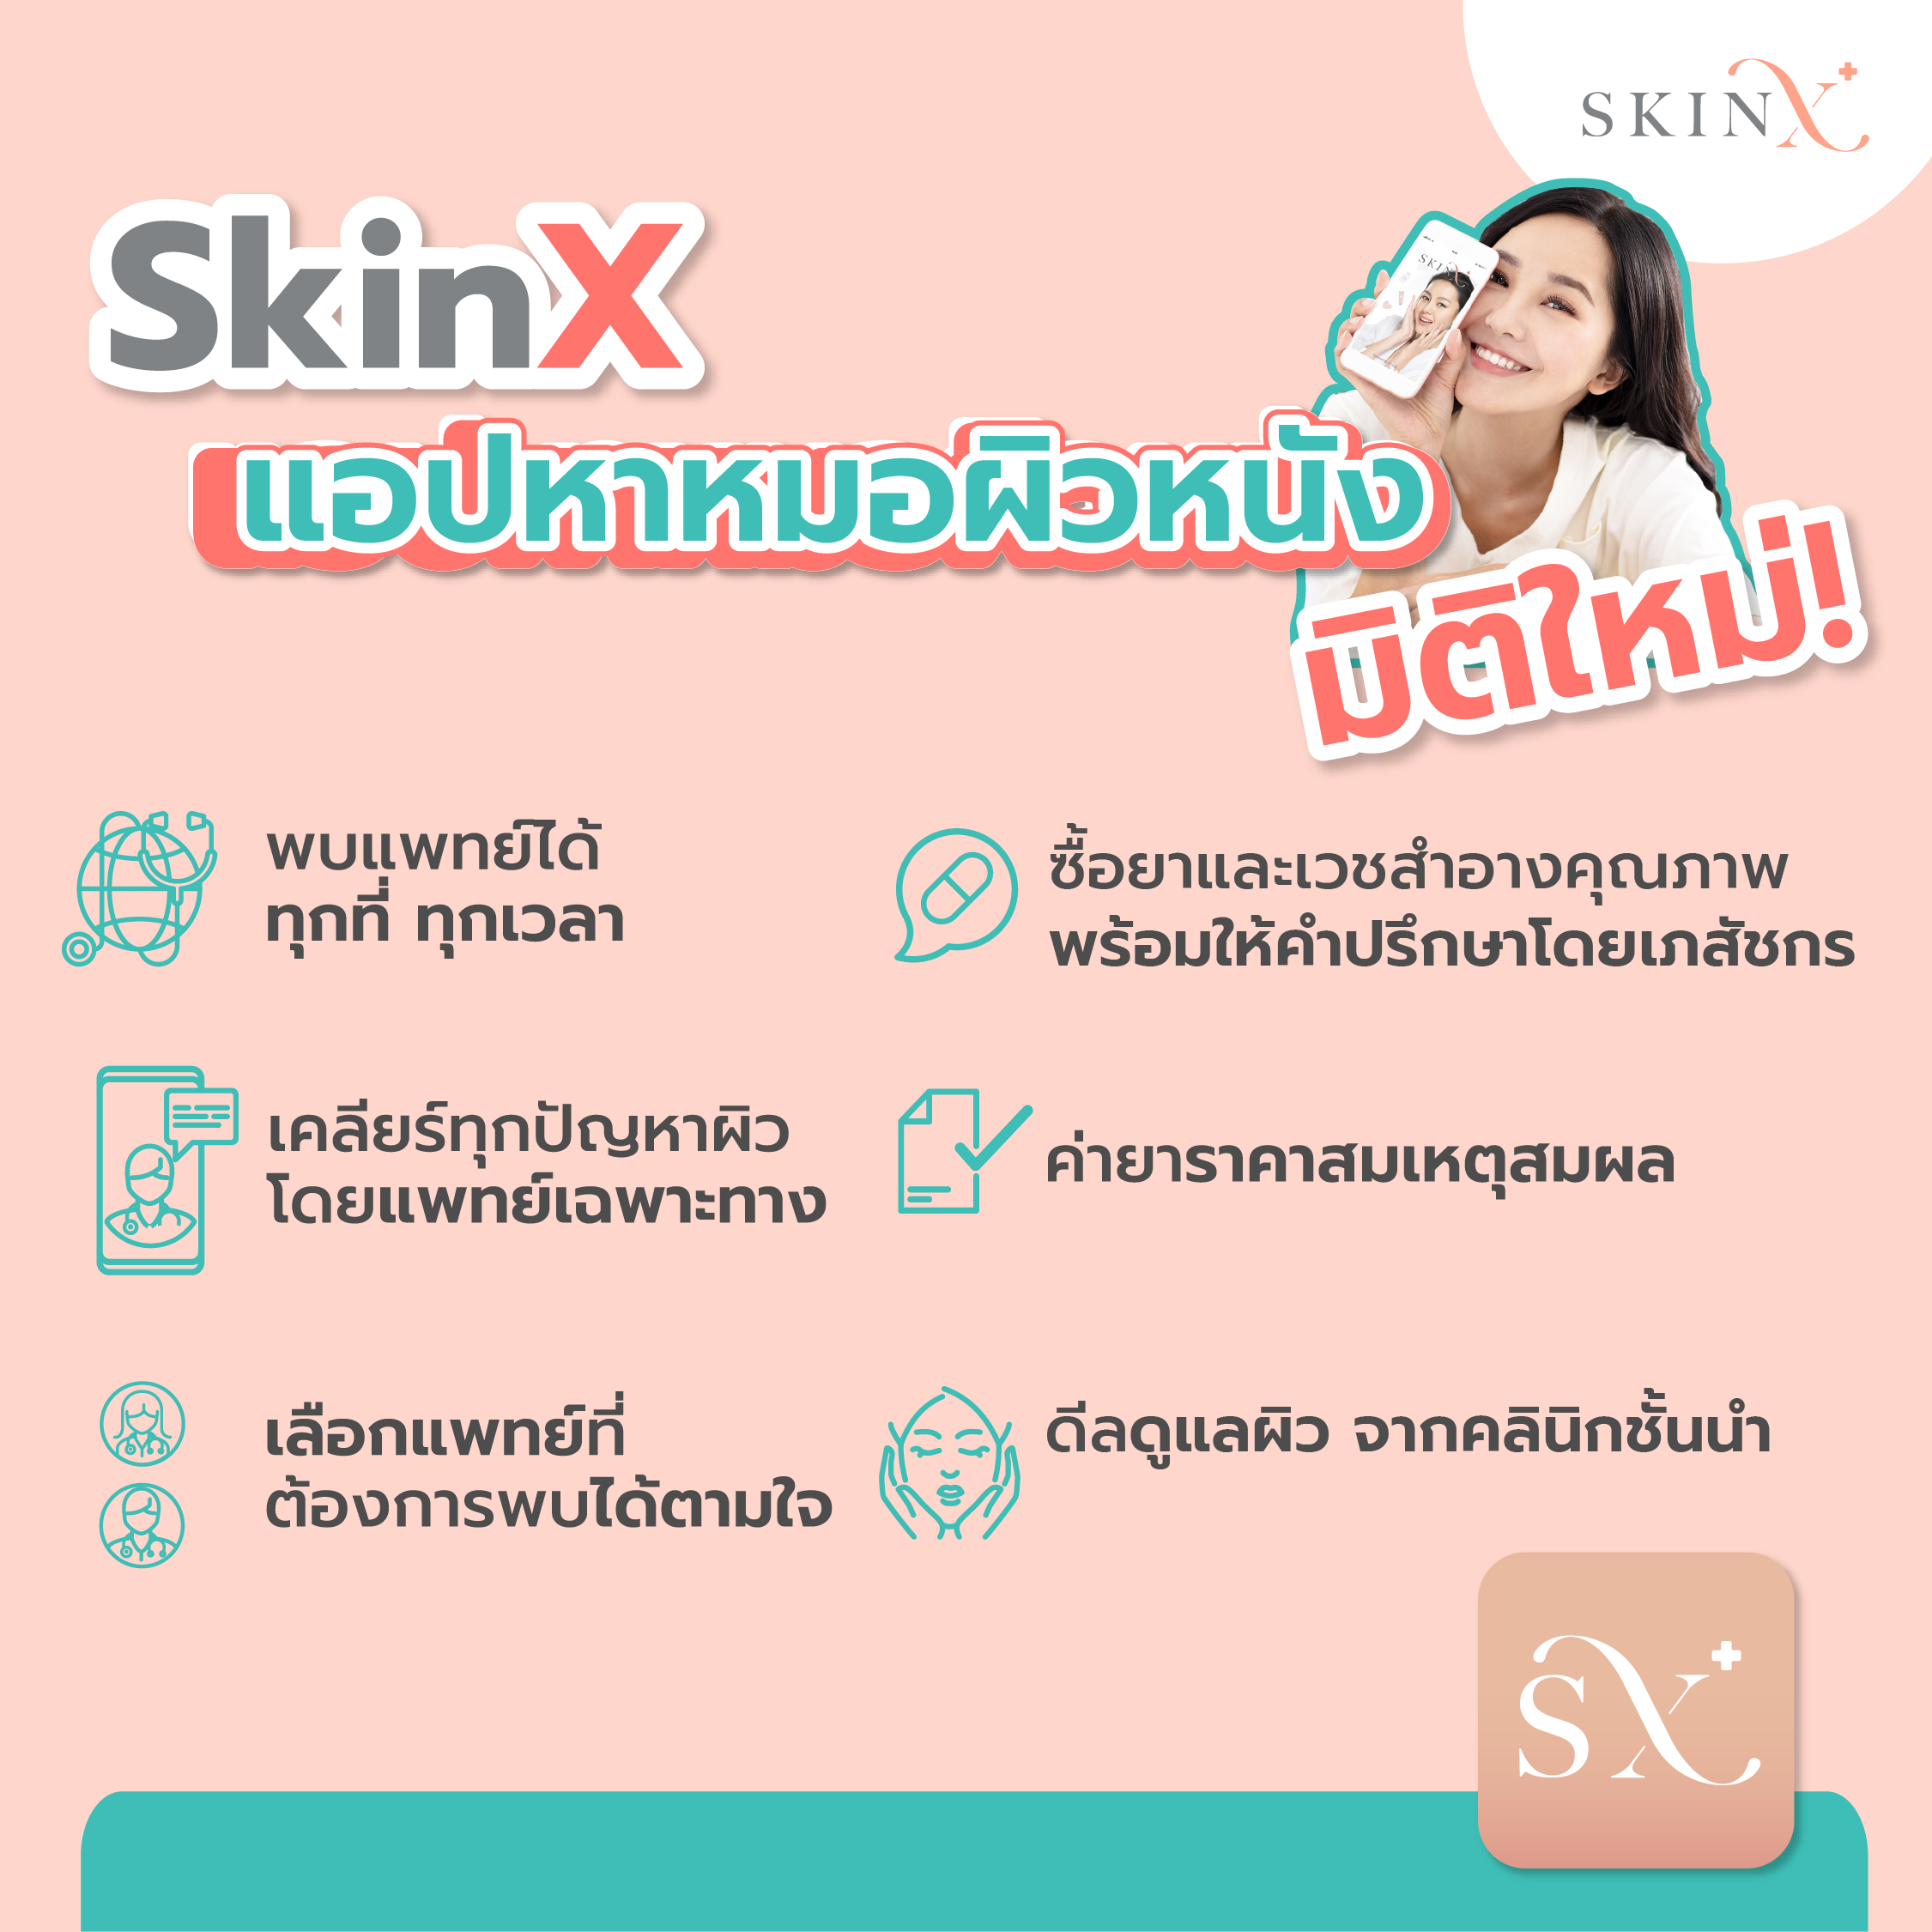 รูปภาพรายละเอียดของ SkinX E-Vo ส่วนลด 1,000 บาท สำหรับทุกการใช้จ่ายใน SkinX